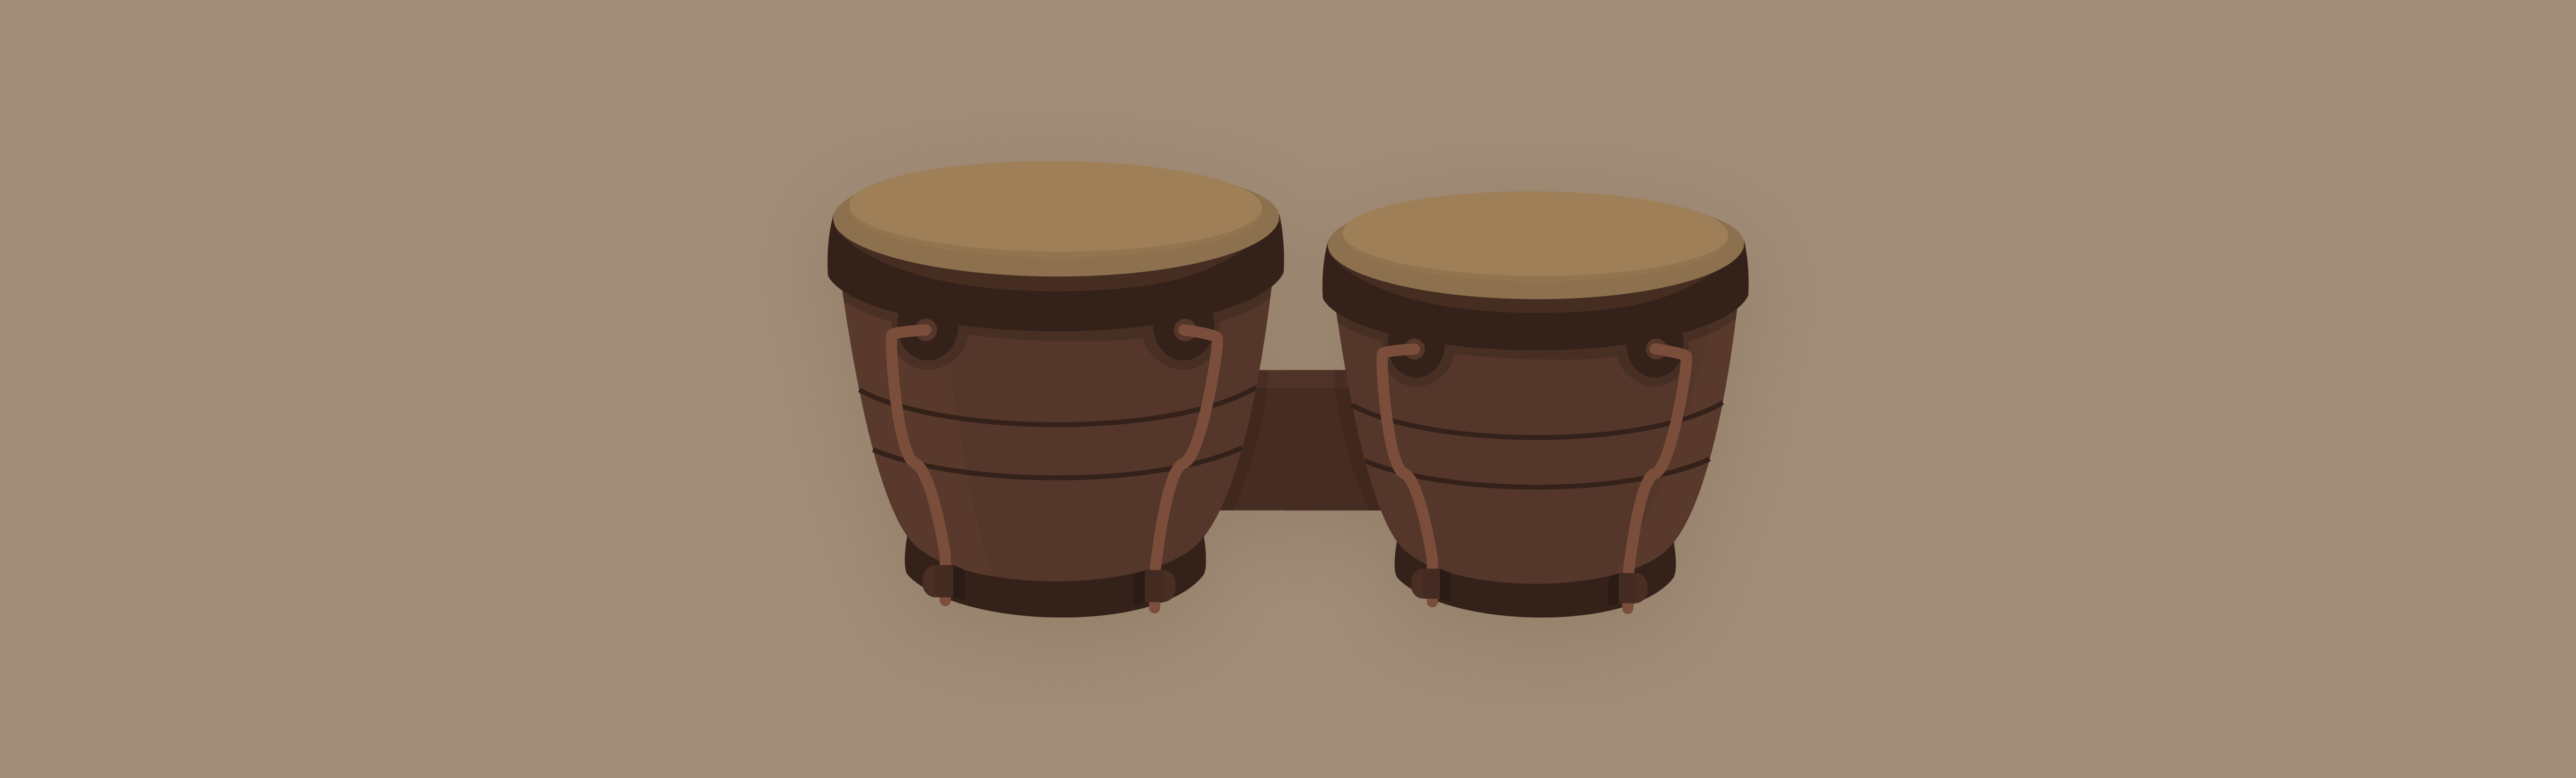 Bongos Or Bongo Drums wiki